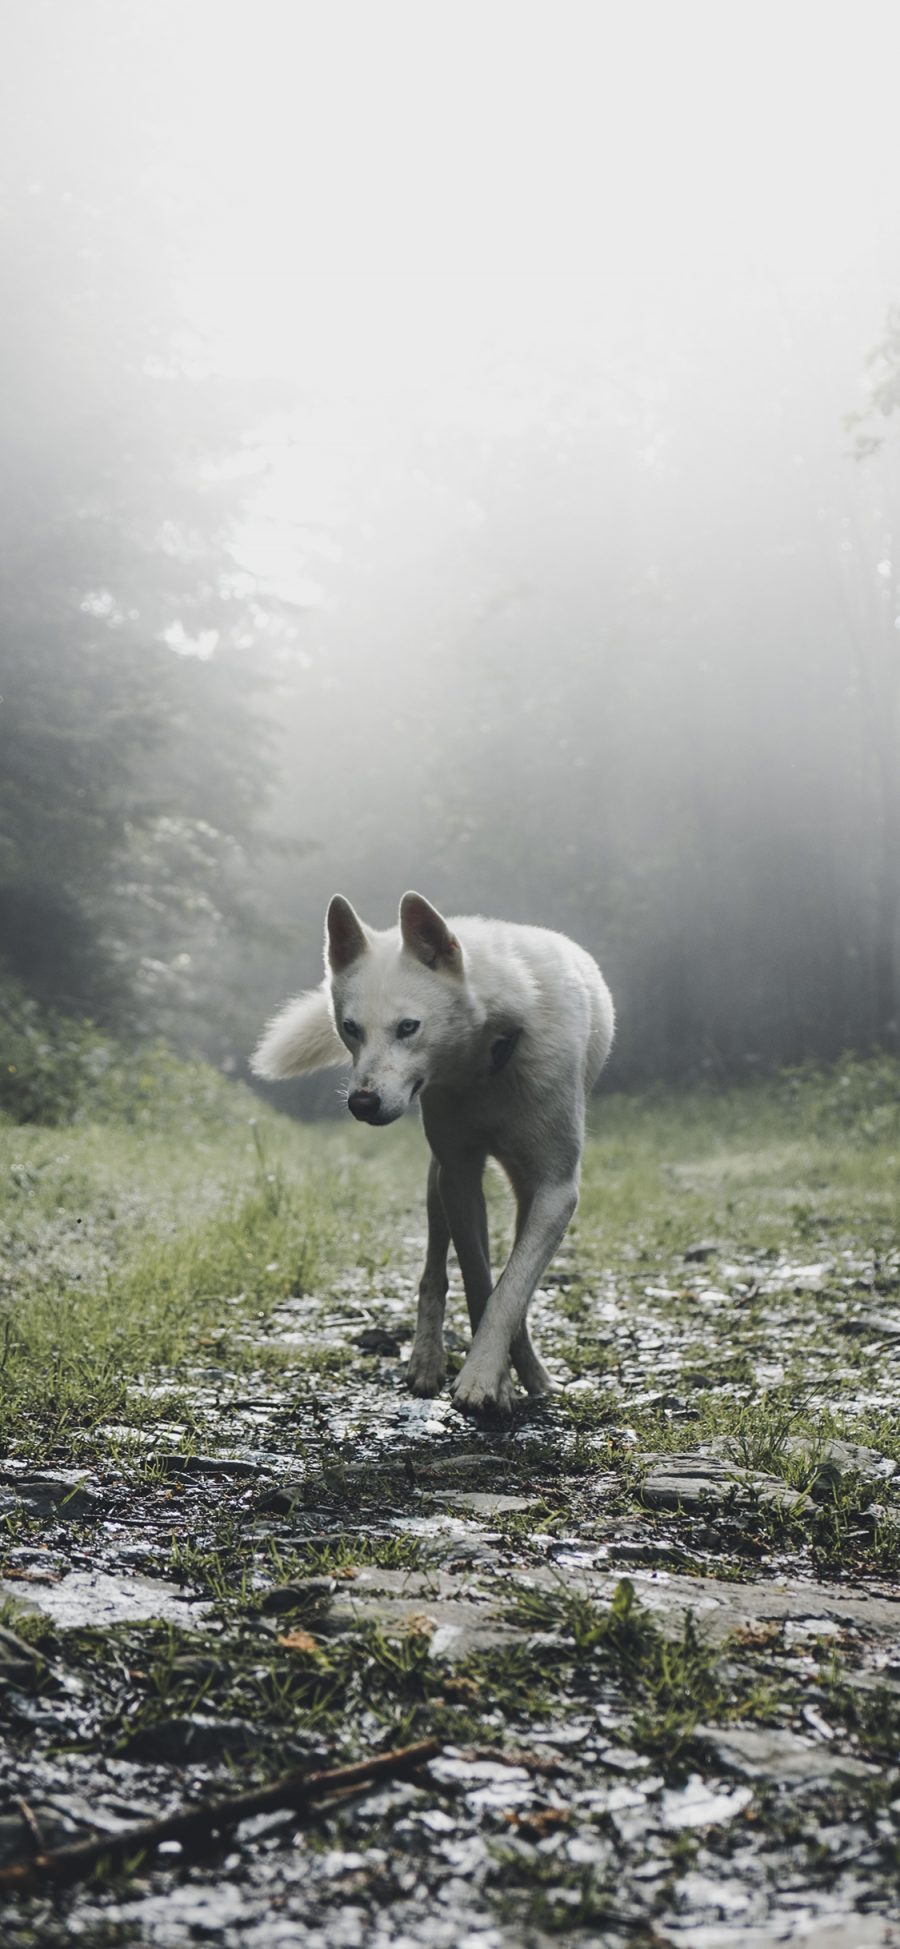 [2436×1125]野外 狼犬 白色皮毛 走位 苹果手机壁纸图片